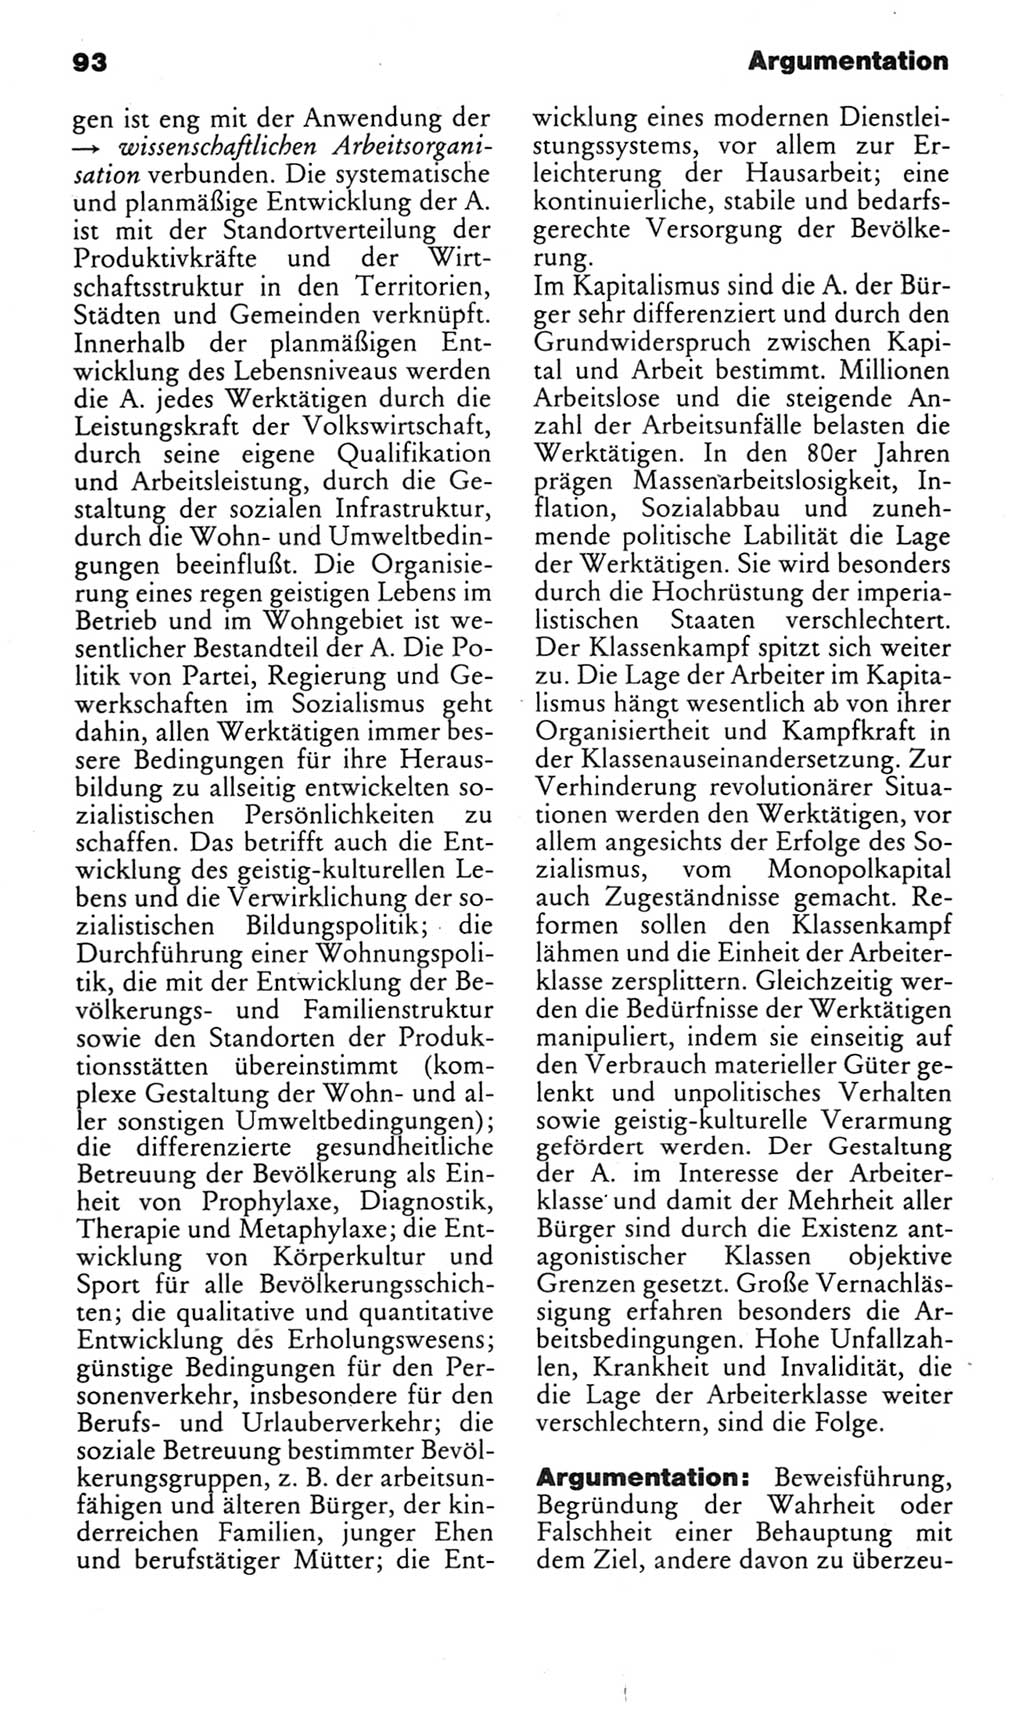 Kleines politisches Wörterbuch [Deutsche Demokratische Republik (DDR)] 1985, Seite 93 (Kl. pol. Wb. DDR 1985, S. 93)